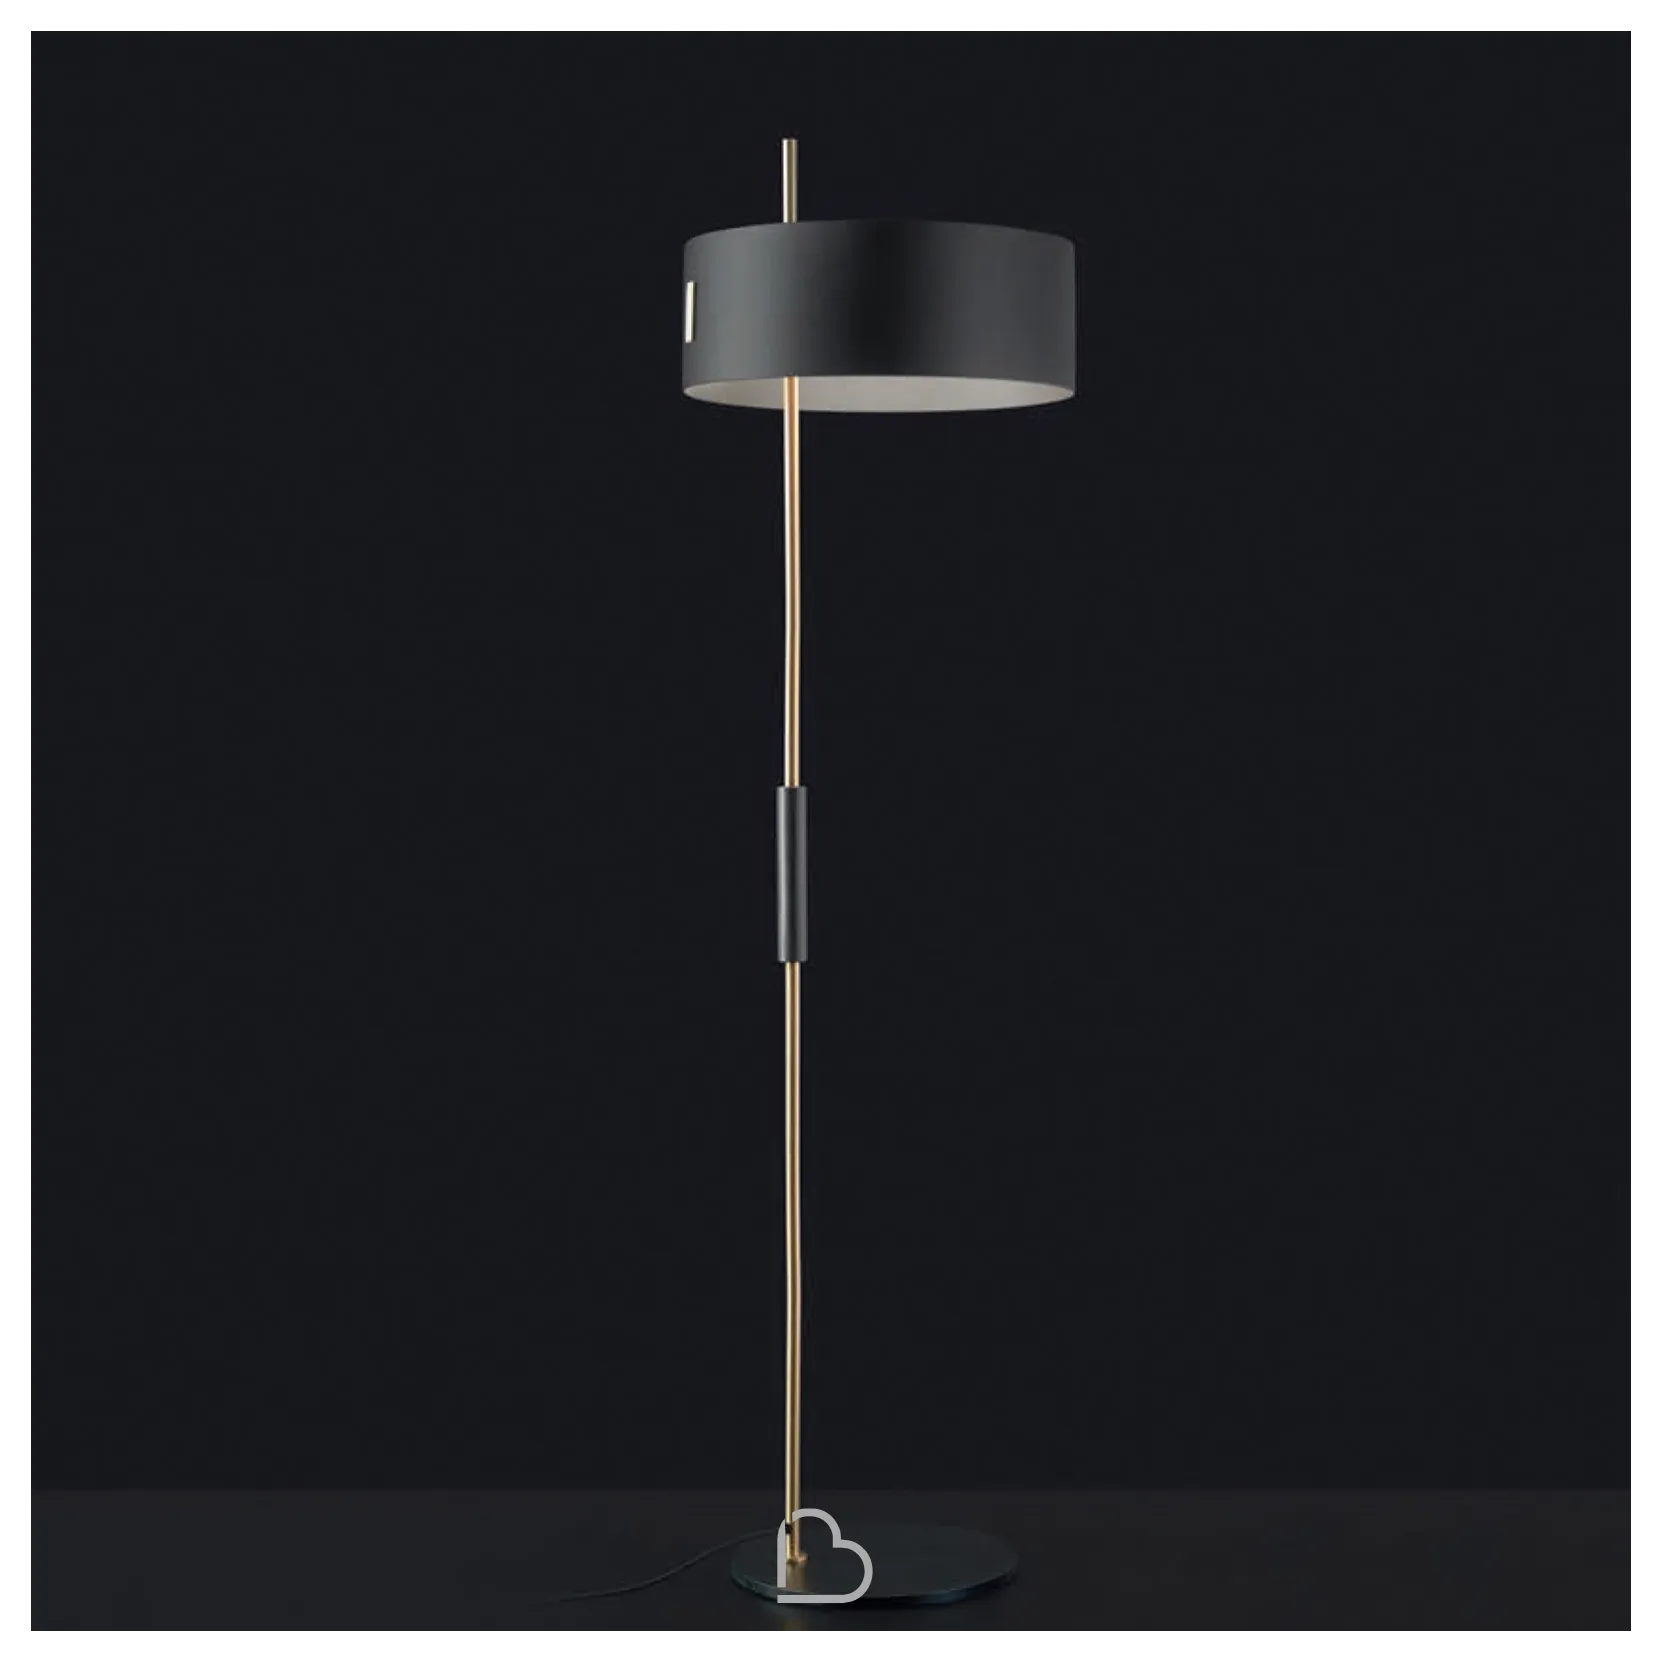 Oluce Floor Lamp 1953 Barthome, Bart Floor Lamp With Shelves Black